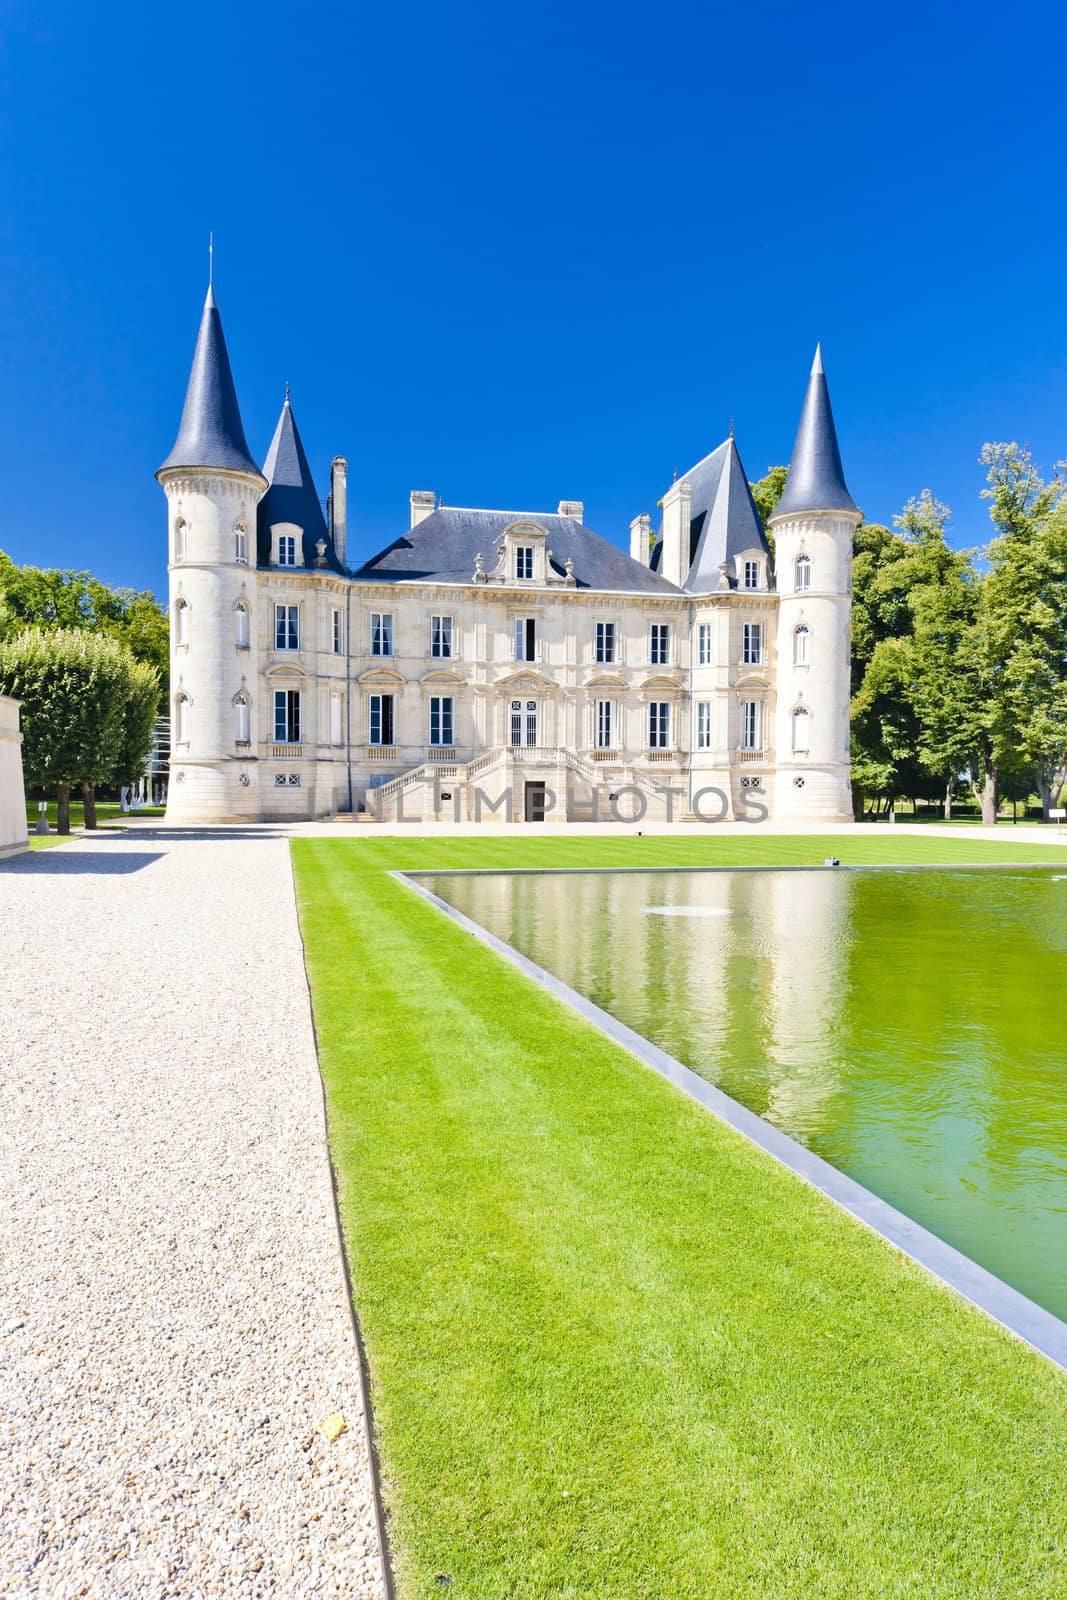 Chateau Pichon Longueville, Bordeaux Region, France by phbcz